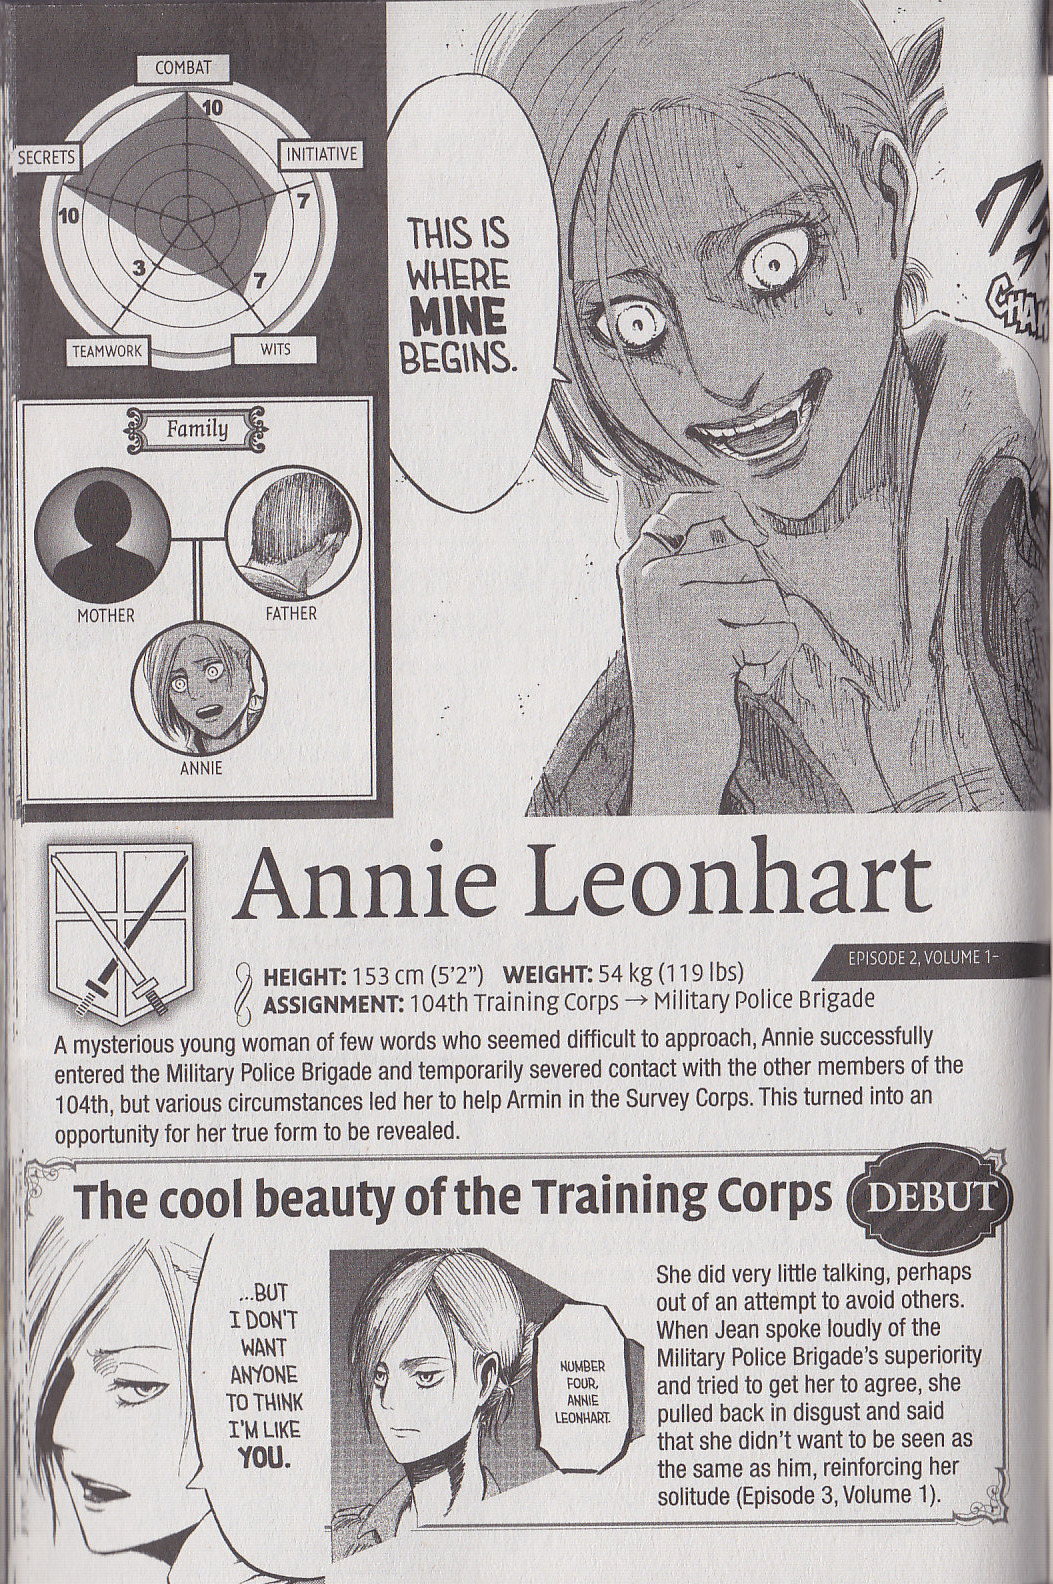 Annie leonhart height